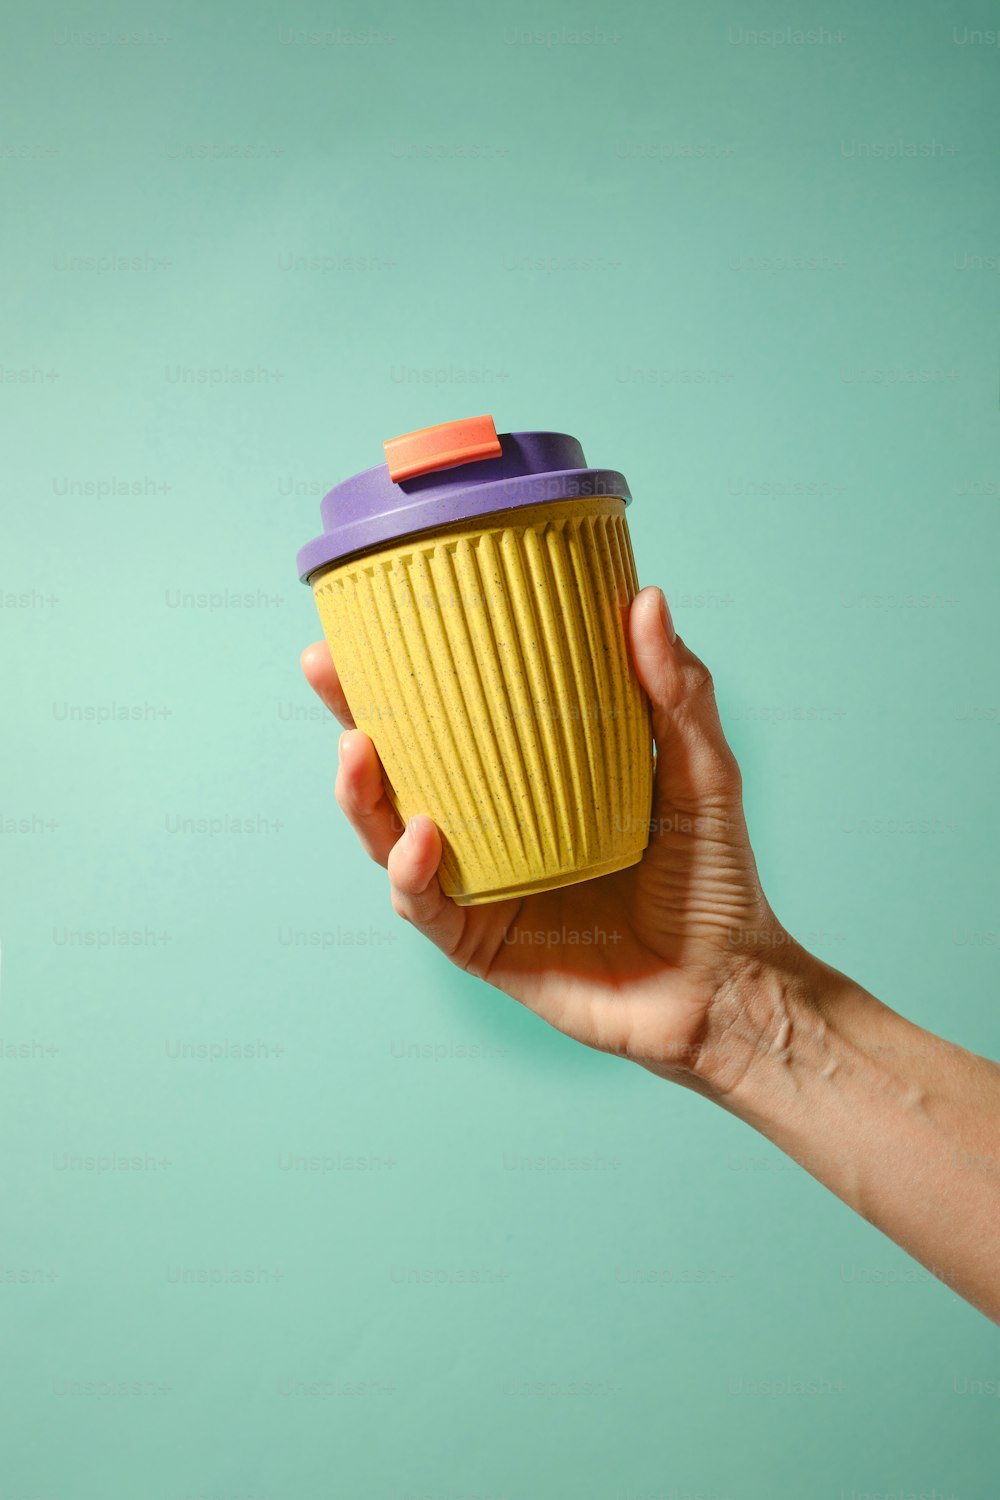 紫色の蓋が付いた黄色いカップを持つ手